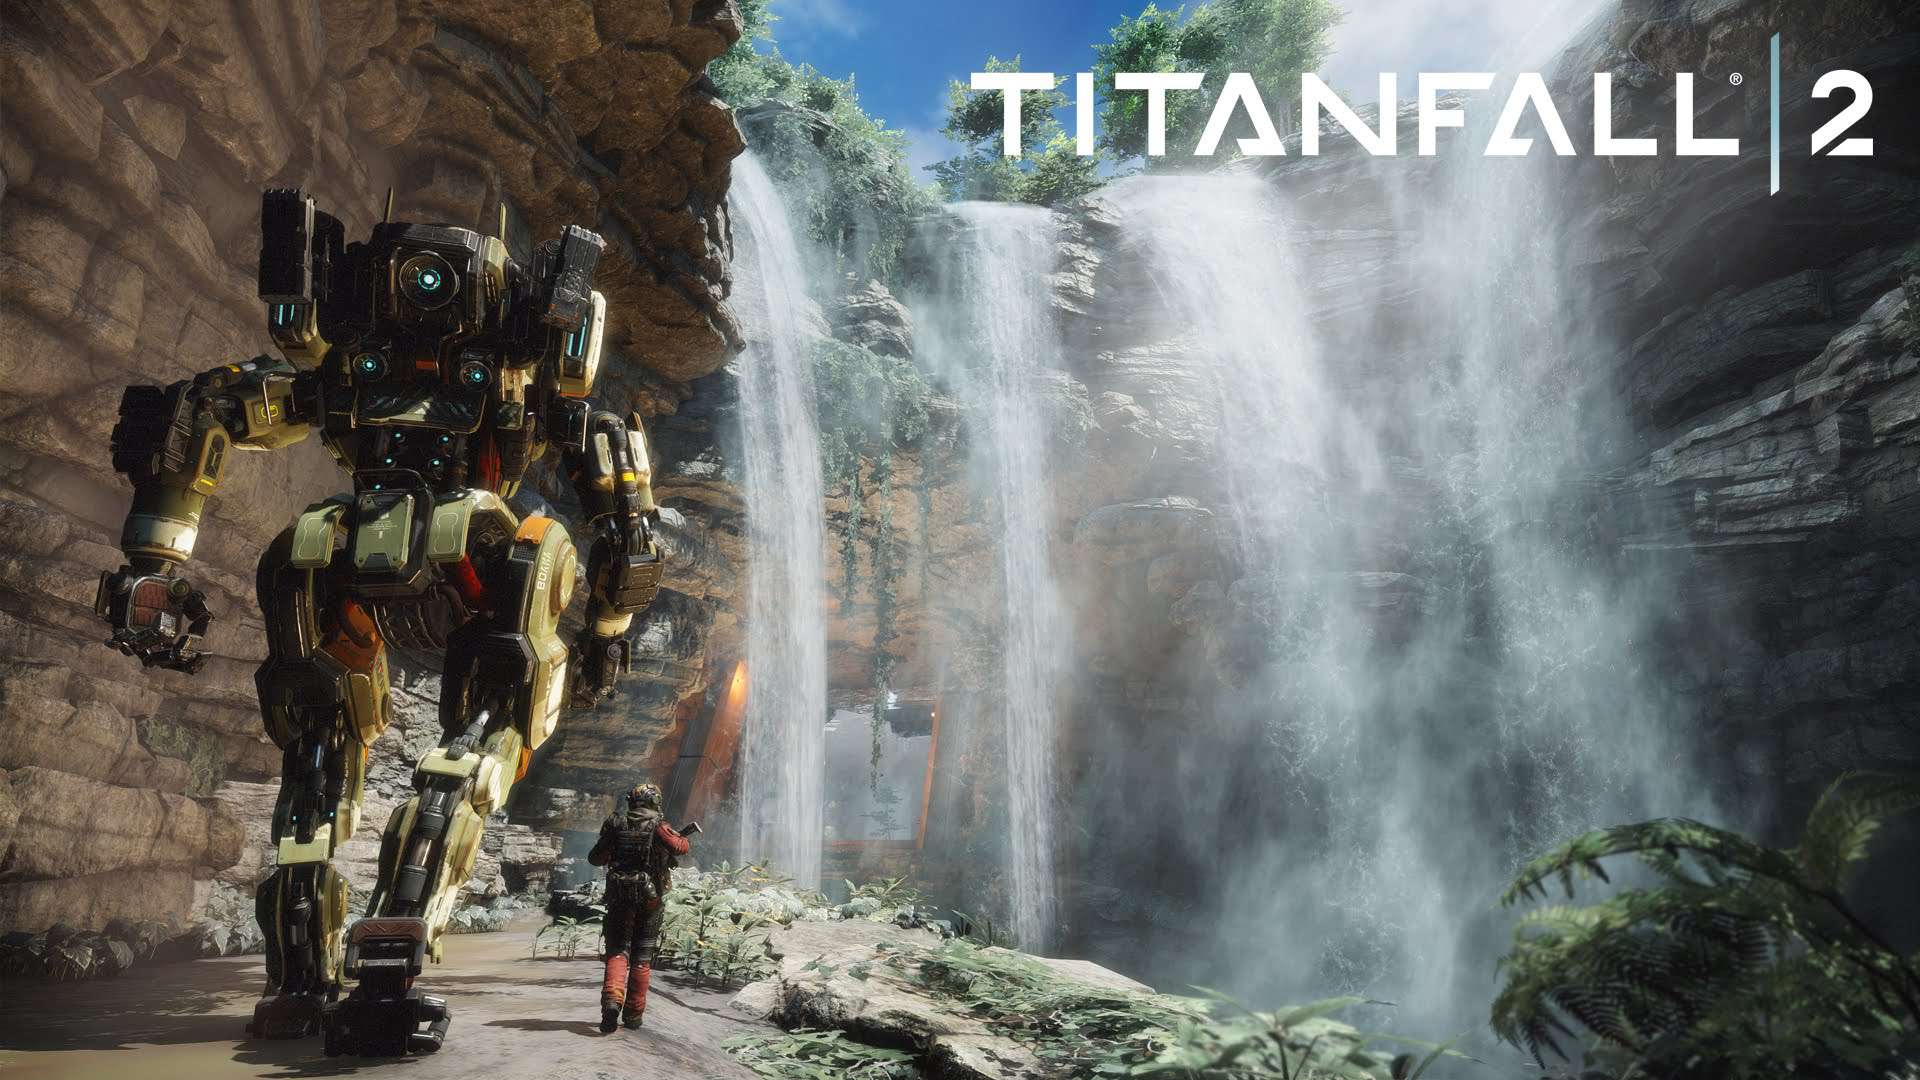 &quot;Nie chcemy dzielić graczy&quot; - EA tłumaczy decyzję o udostępnianiu za darmo dodatków w Titanfall 2